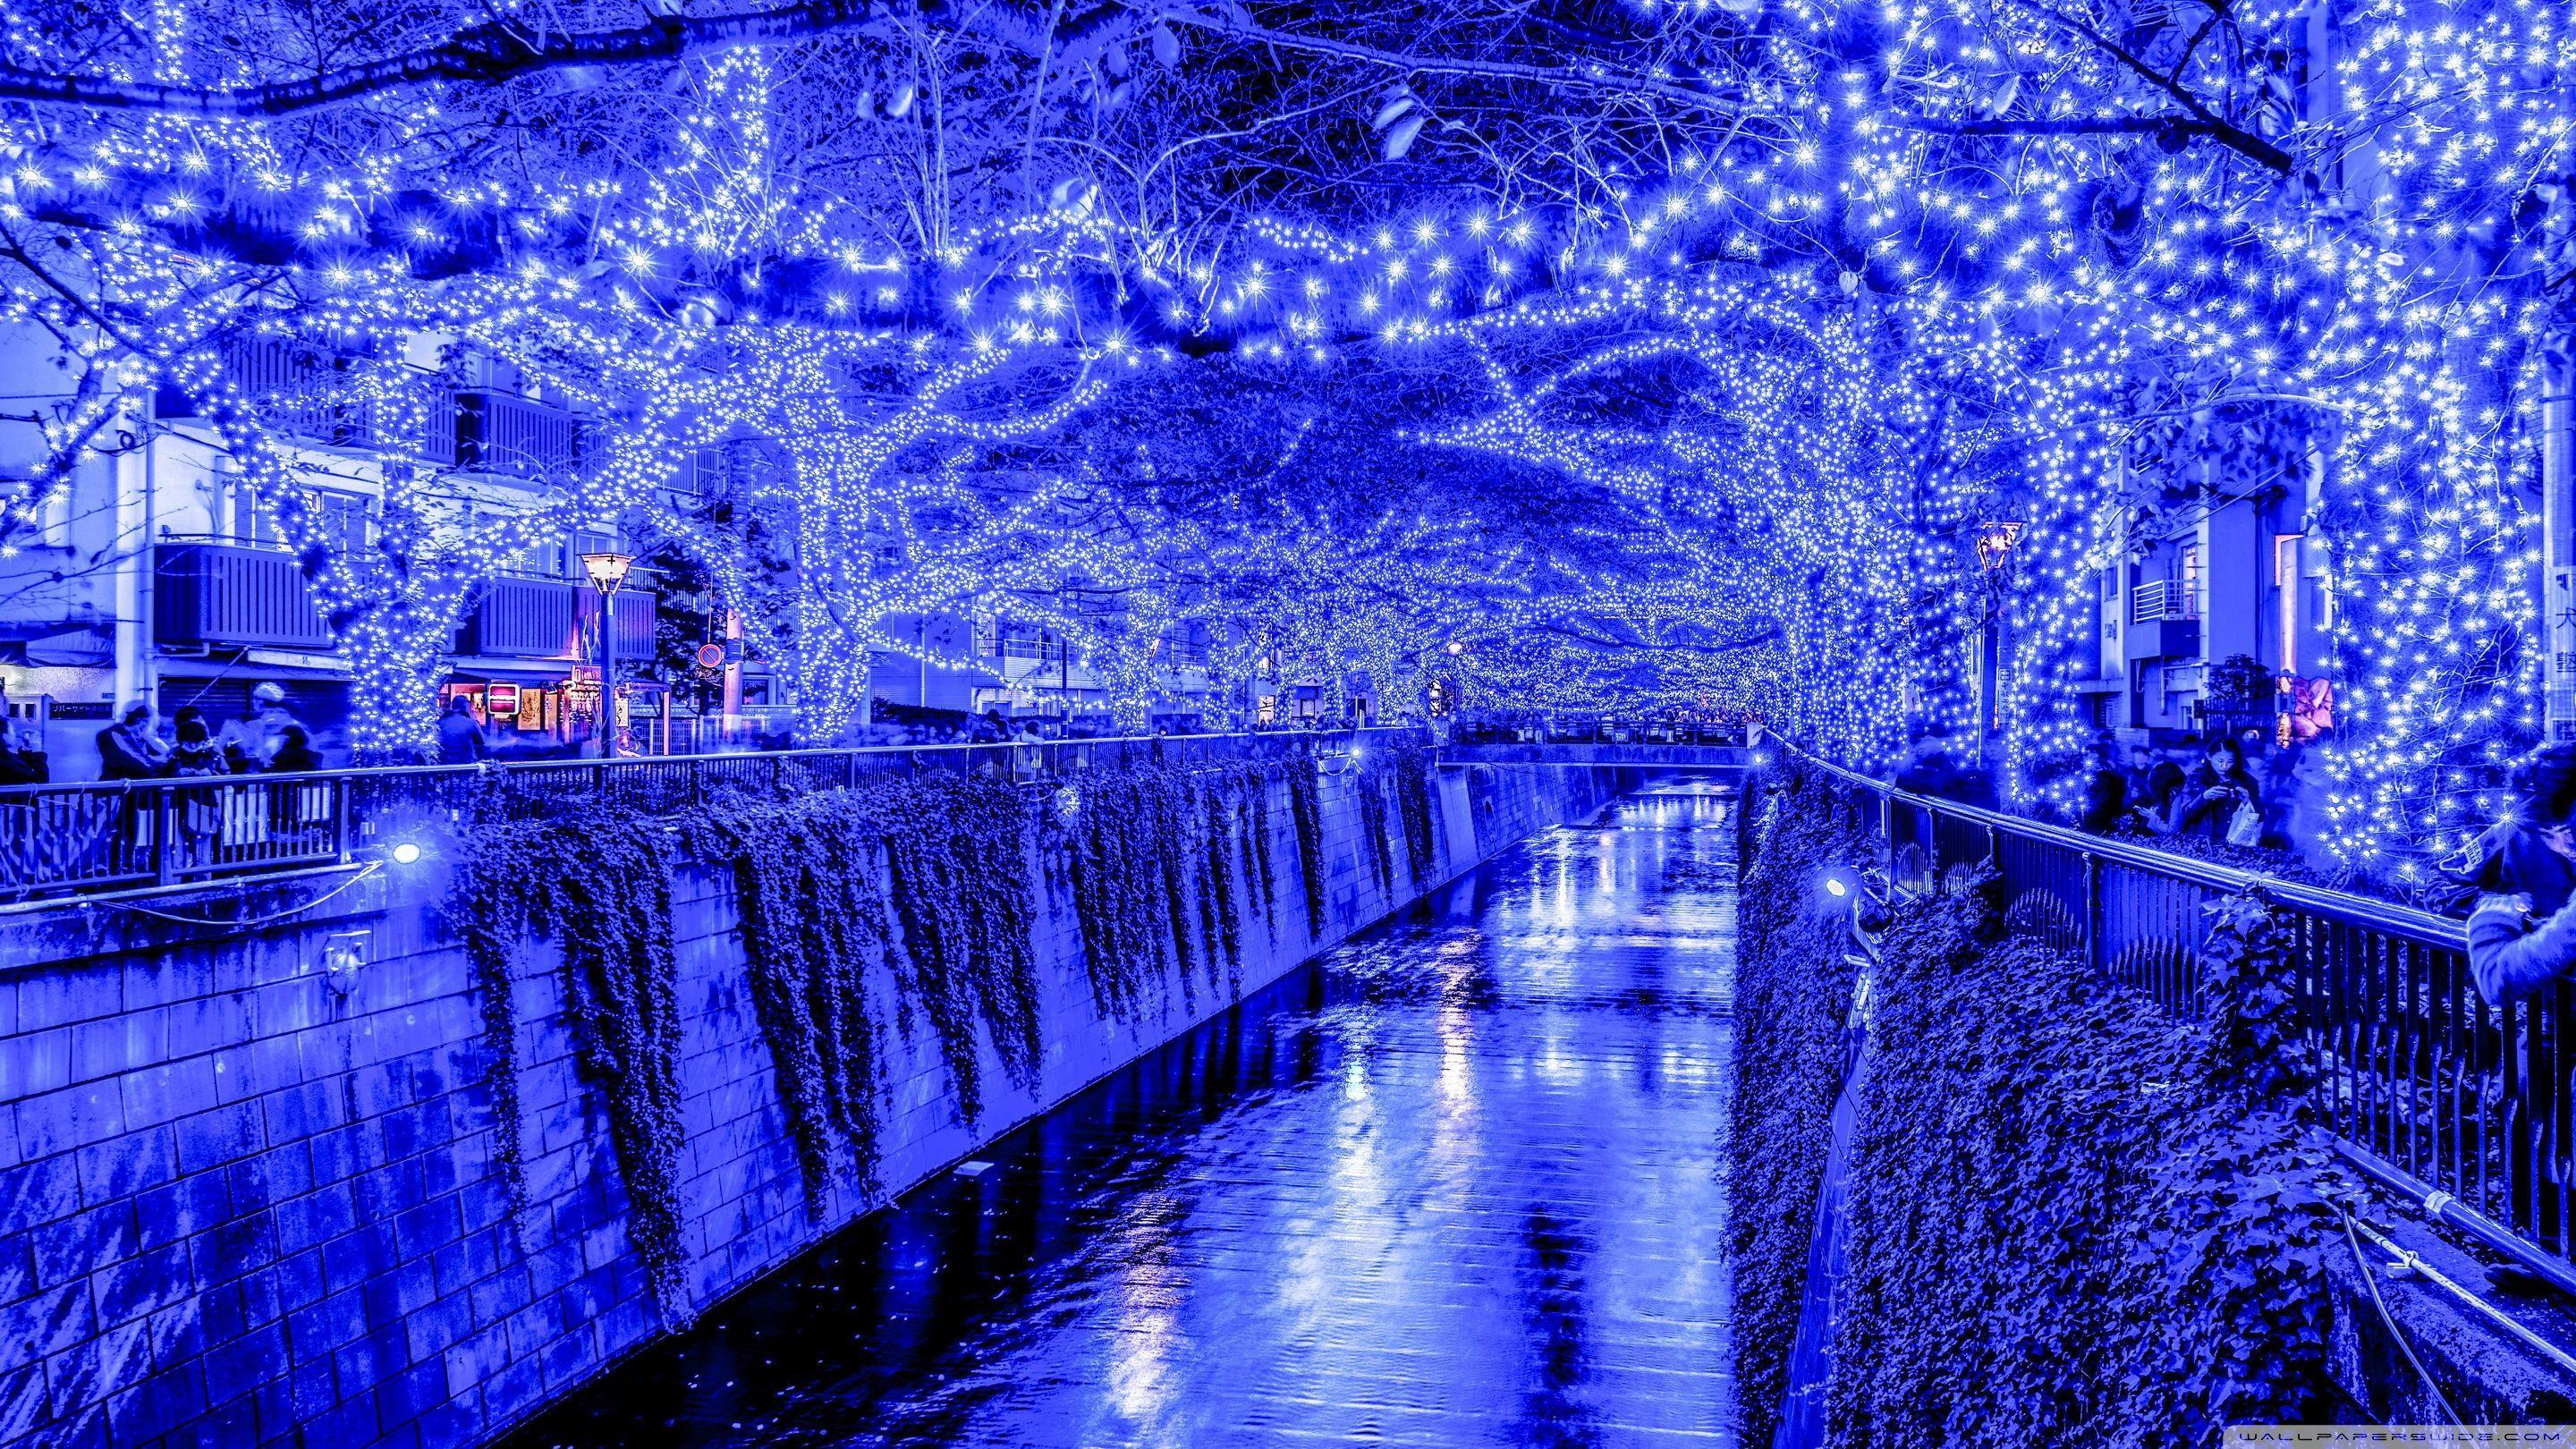 Muôn màu ánh sáng Giáng Sinh của Tokyo vẫn làm say đắm lòng người dù qua bao thế hệ. Sắc đỏ - xanh - trắng đặc trưng của nền tảng máy tính càng tôn lên vẻ đẹp ấy. Hãy chiêm ngưỡng hình ảnh giáng sinh này để cảm nhận ngay điều đặc biệt mà mùa này mang lại.